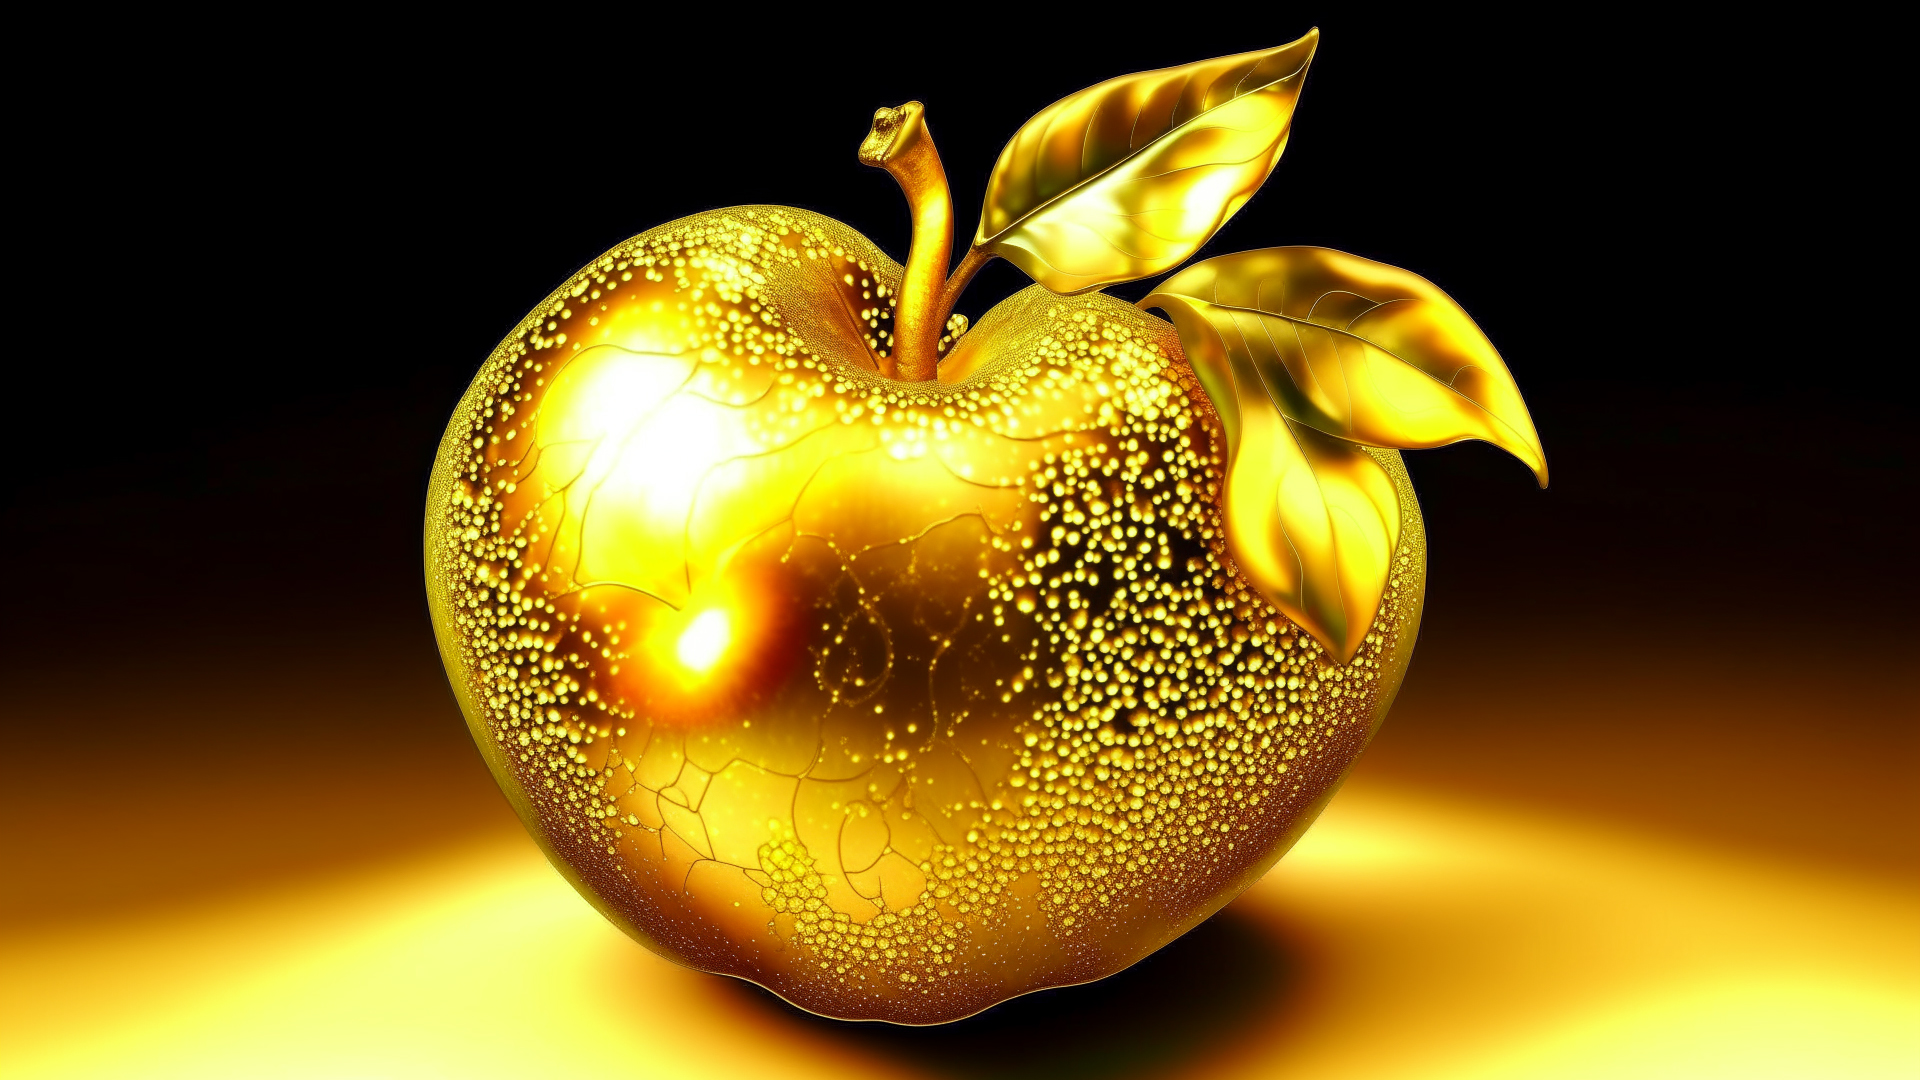 A magical golden apple.